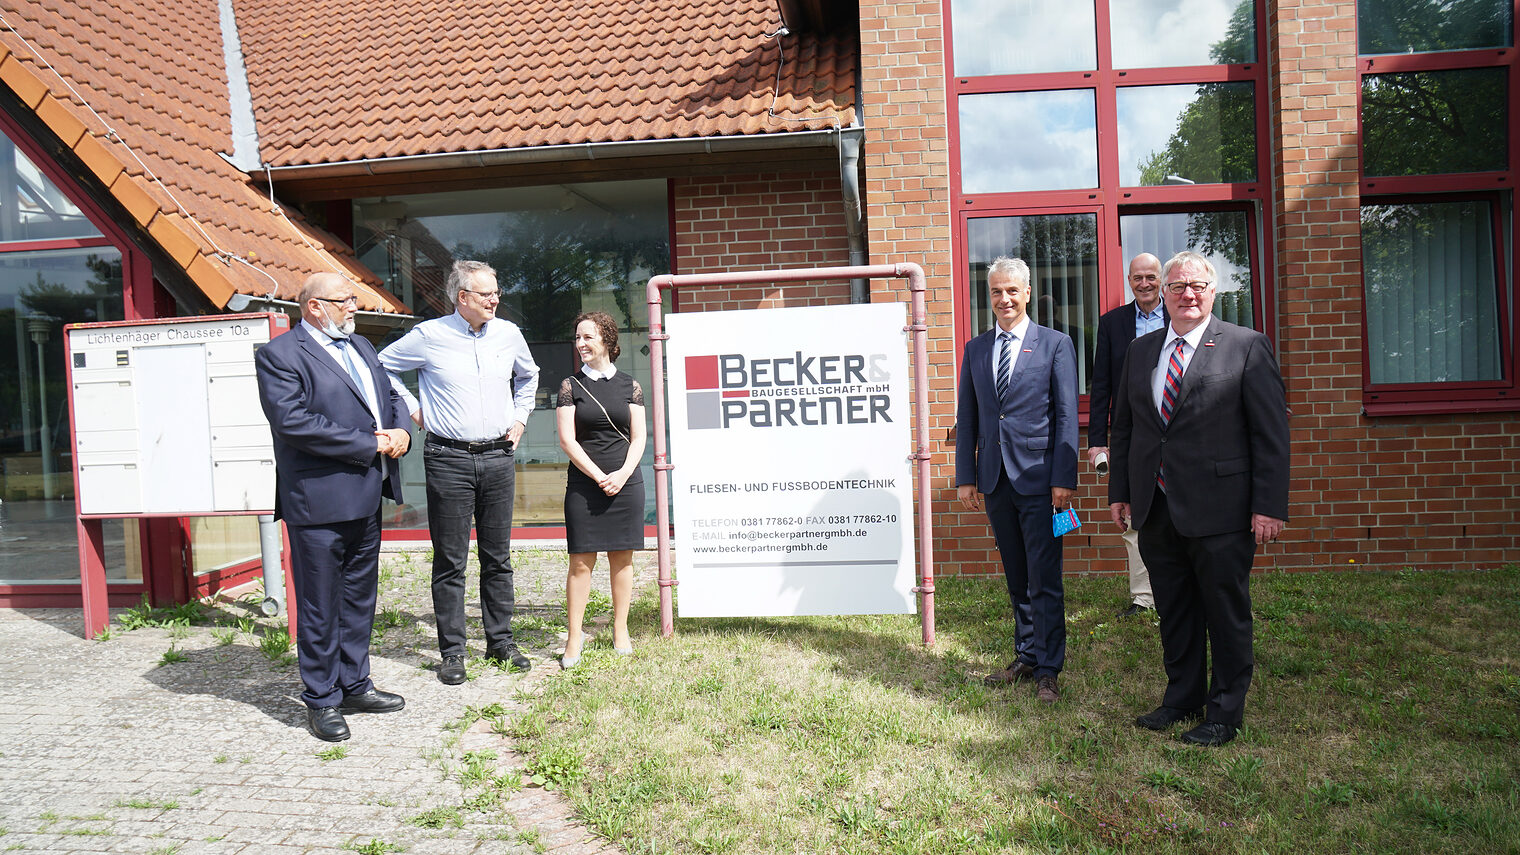 Becker & Partner Baugesellschaft mbH